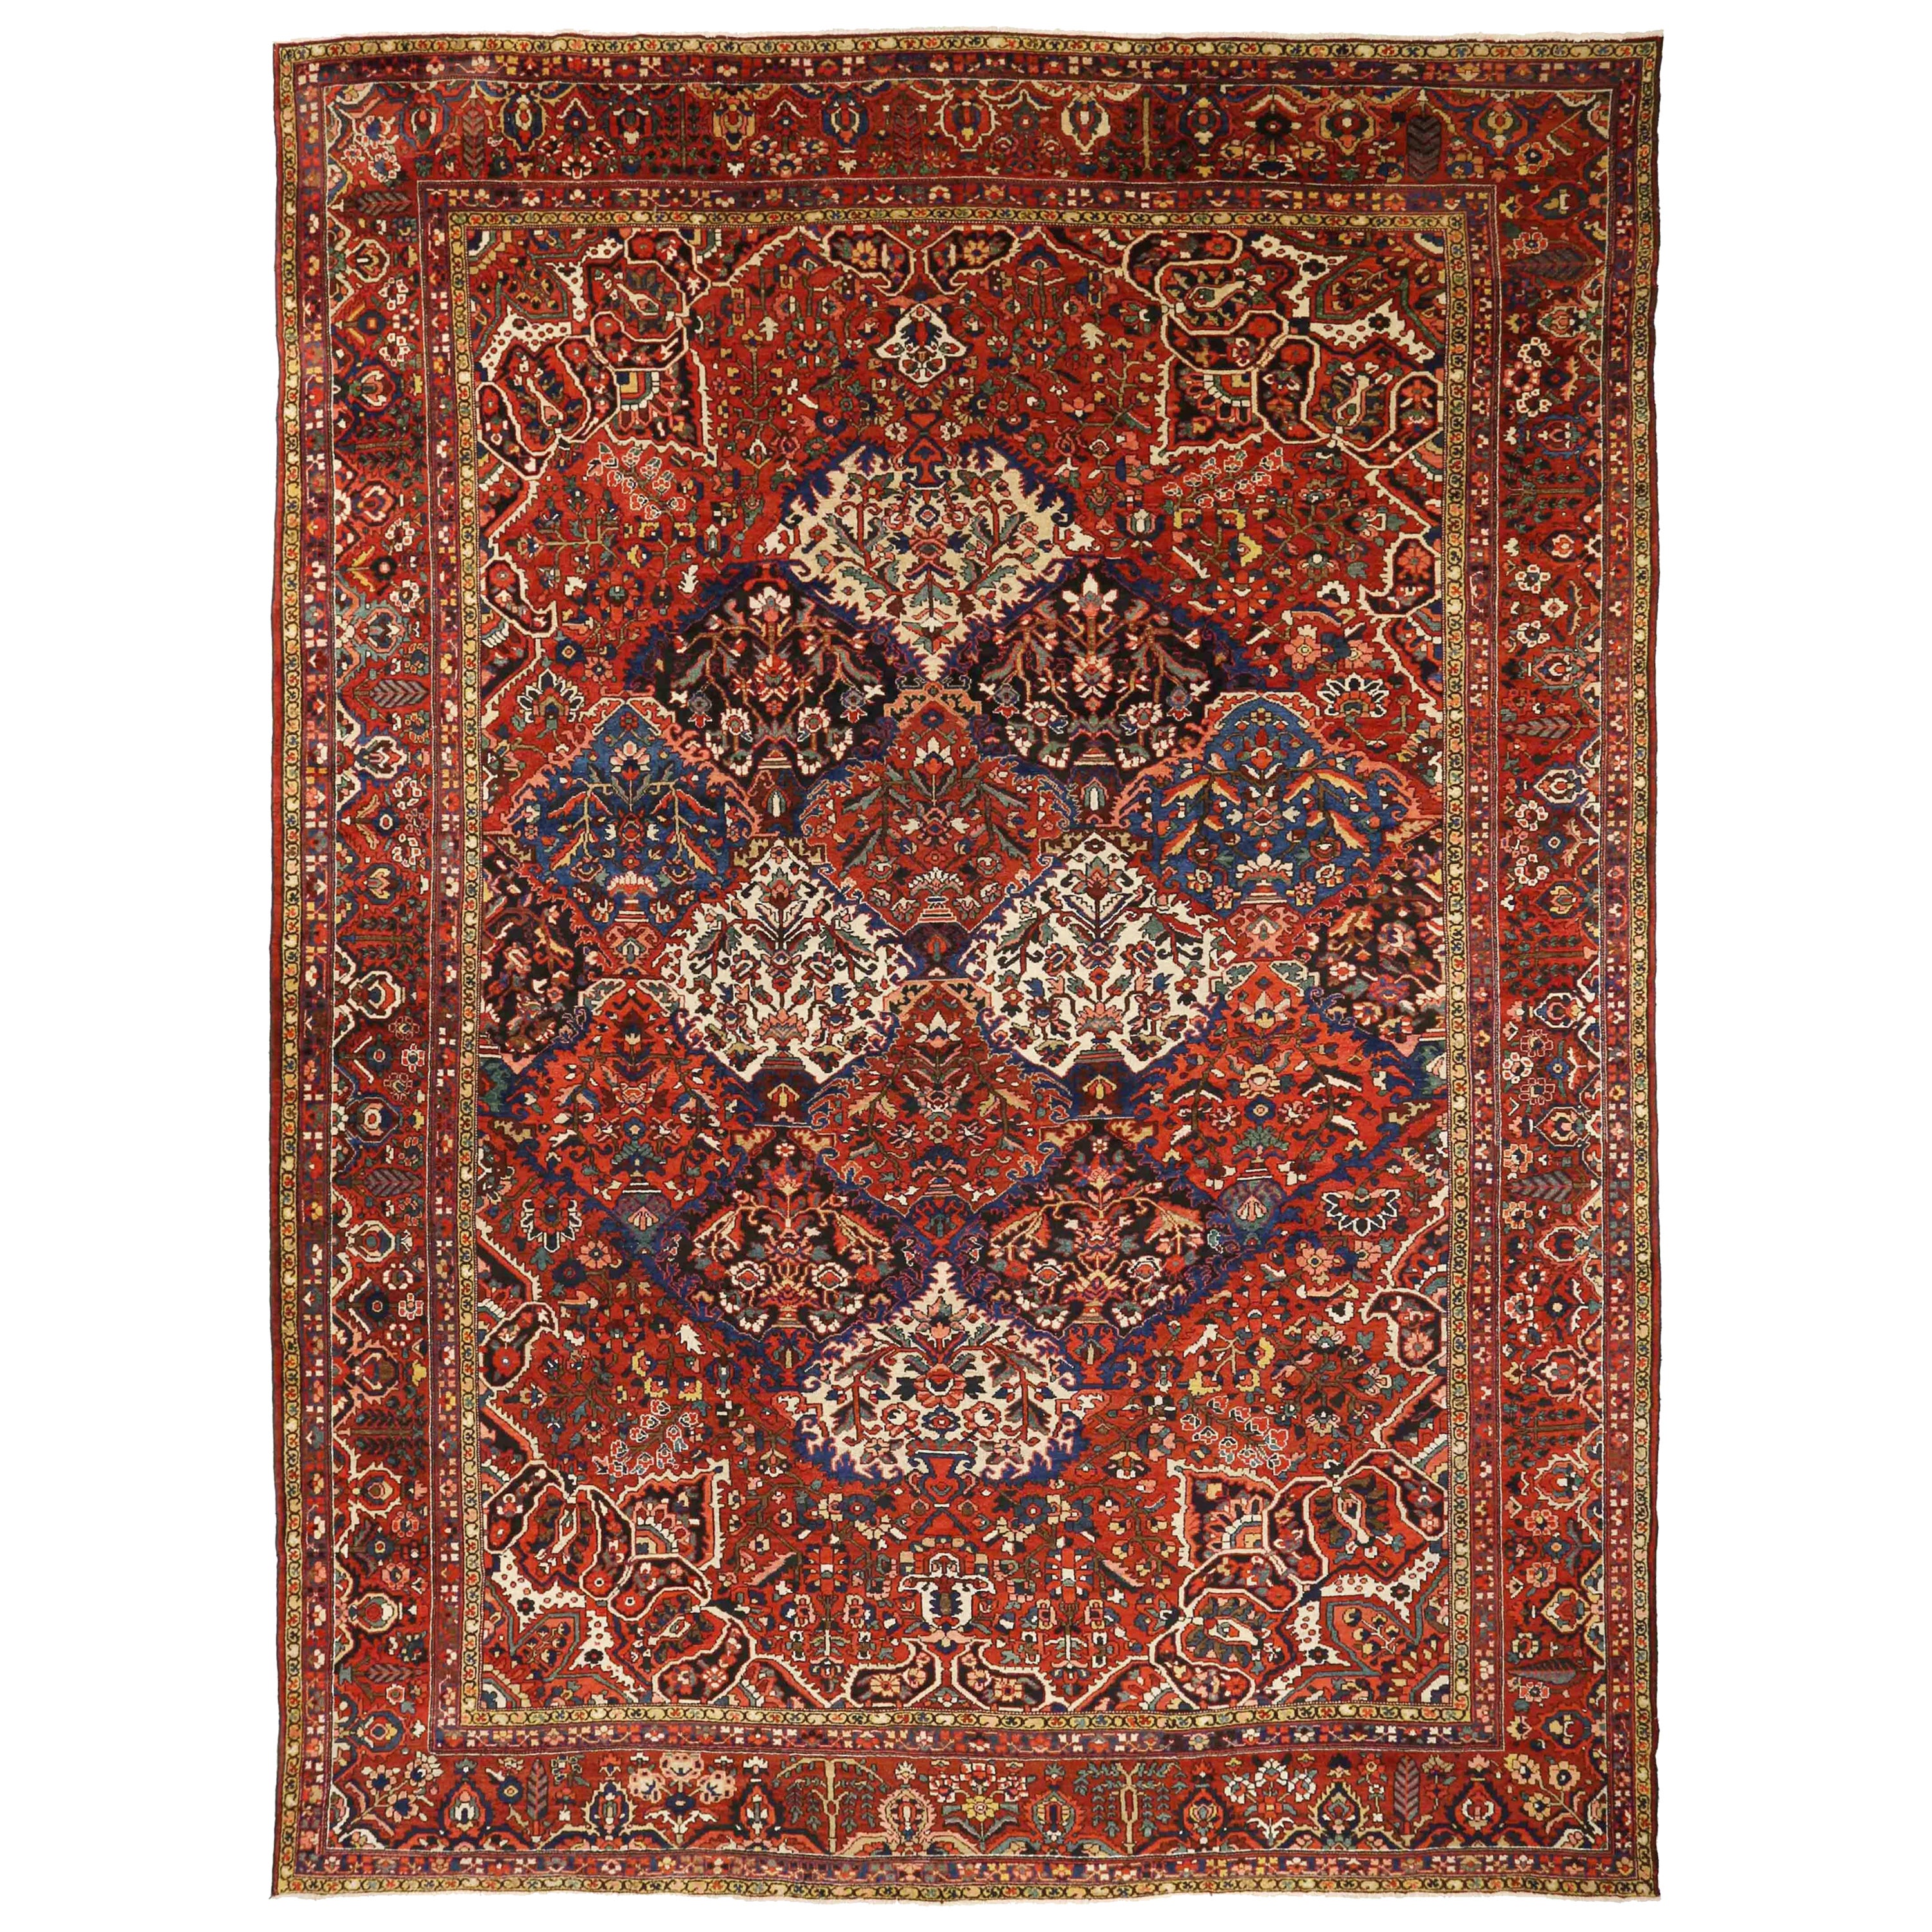 Antiker persischer Teppich im Bakhtiar-Design